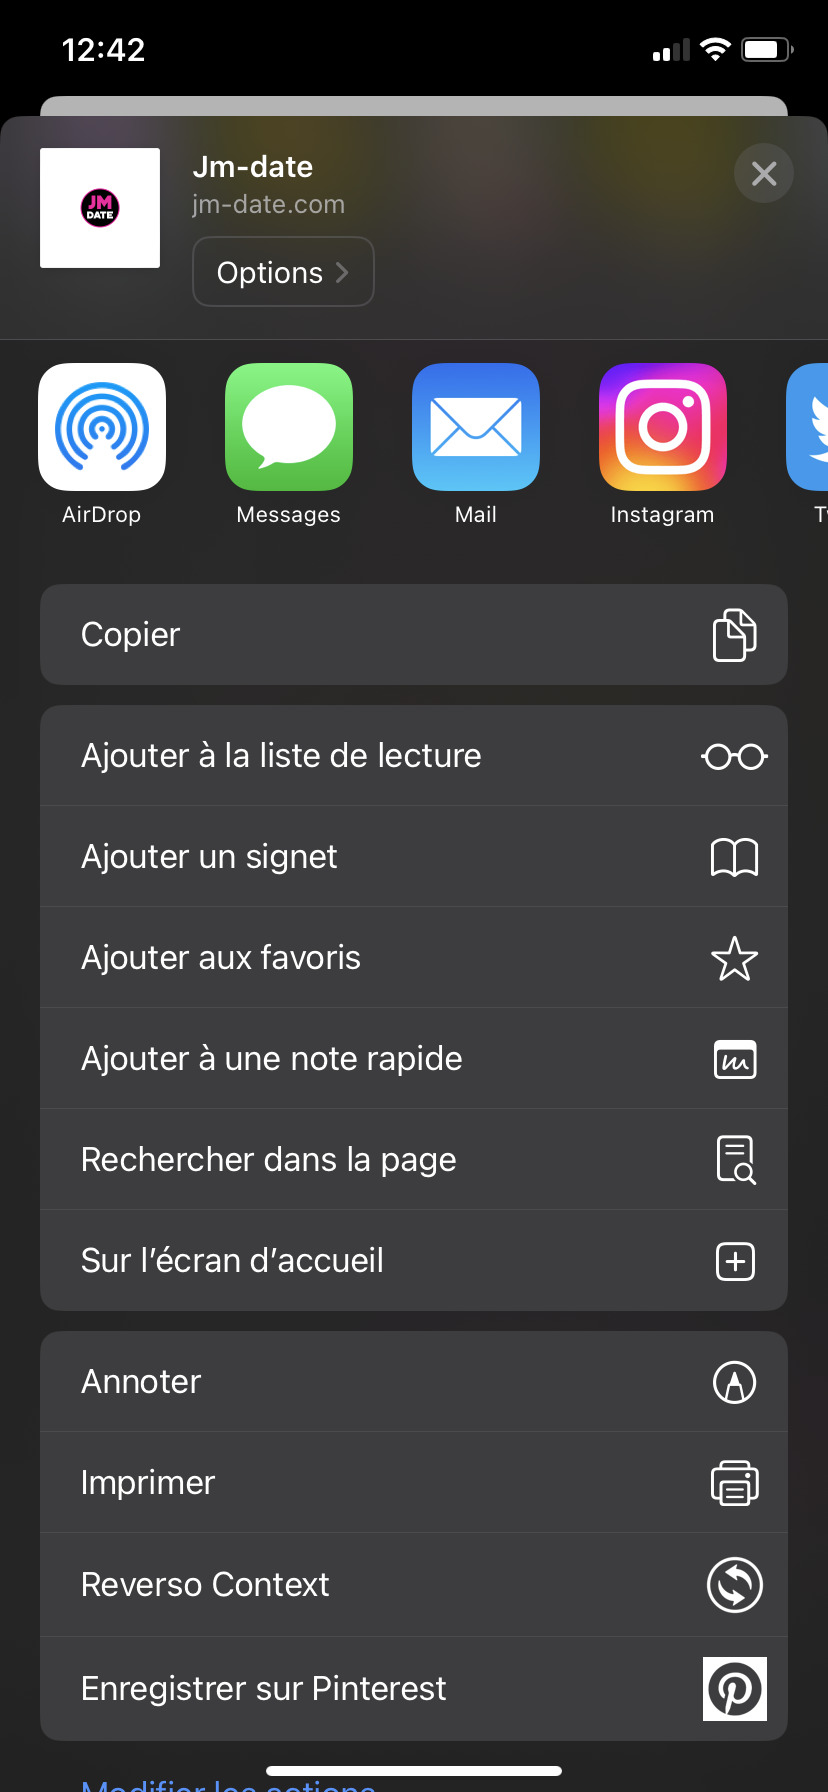 Contacto Jacquie et Michel: en la pantalla de inicio de IOS